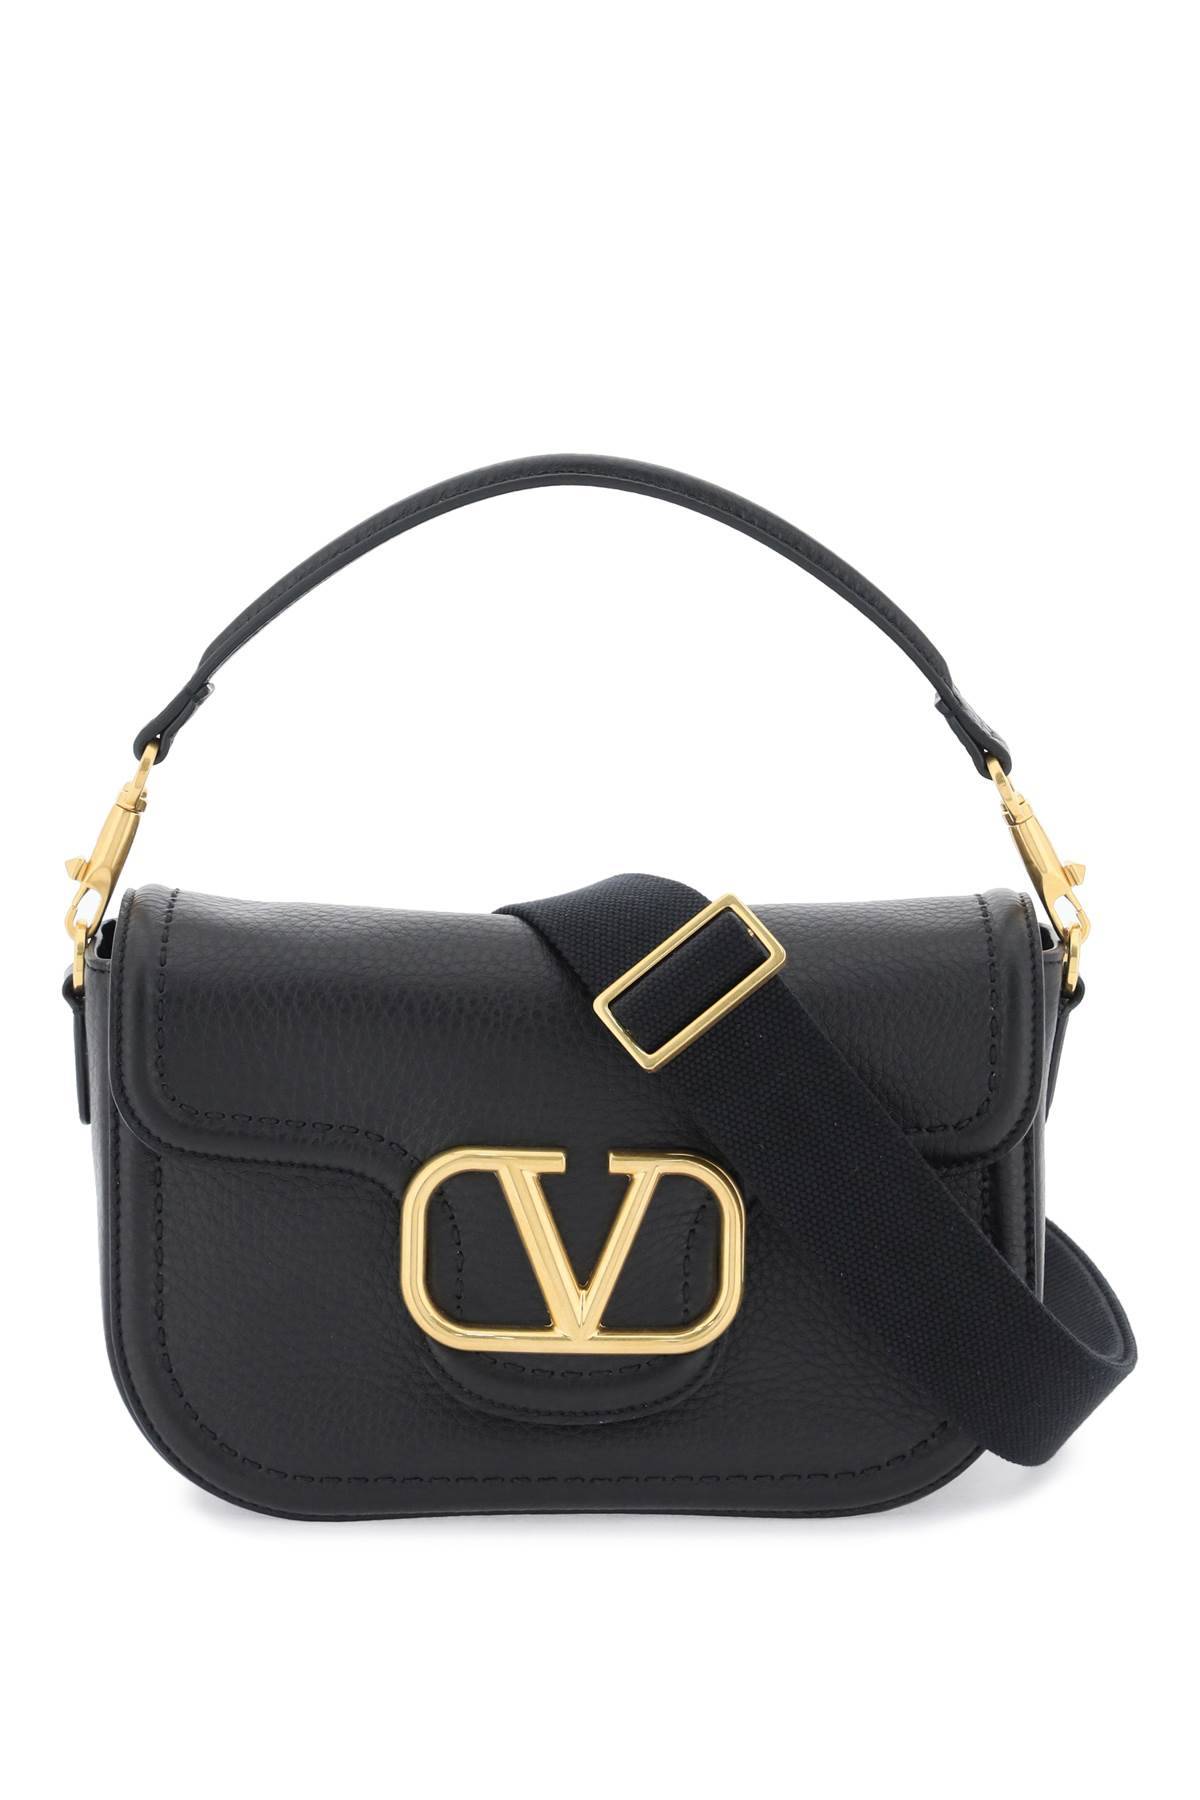 Valentino Garavani Alltime Shoulder Bag In Black